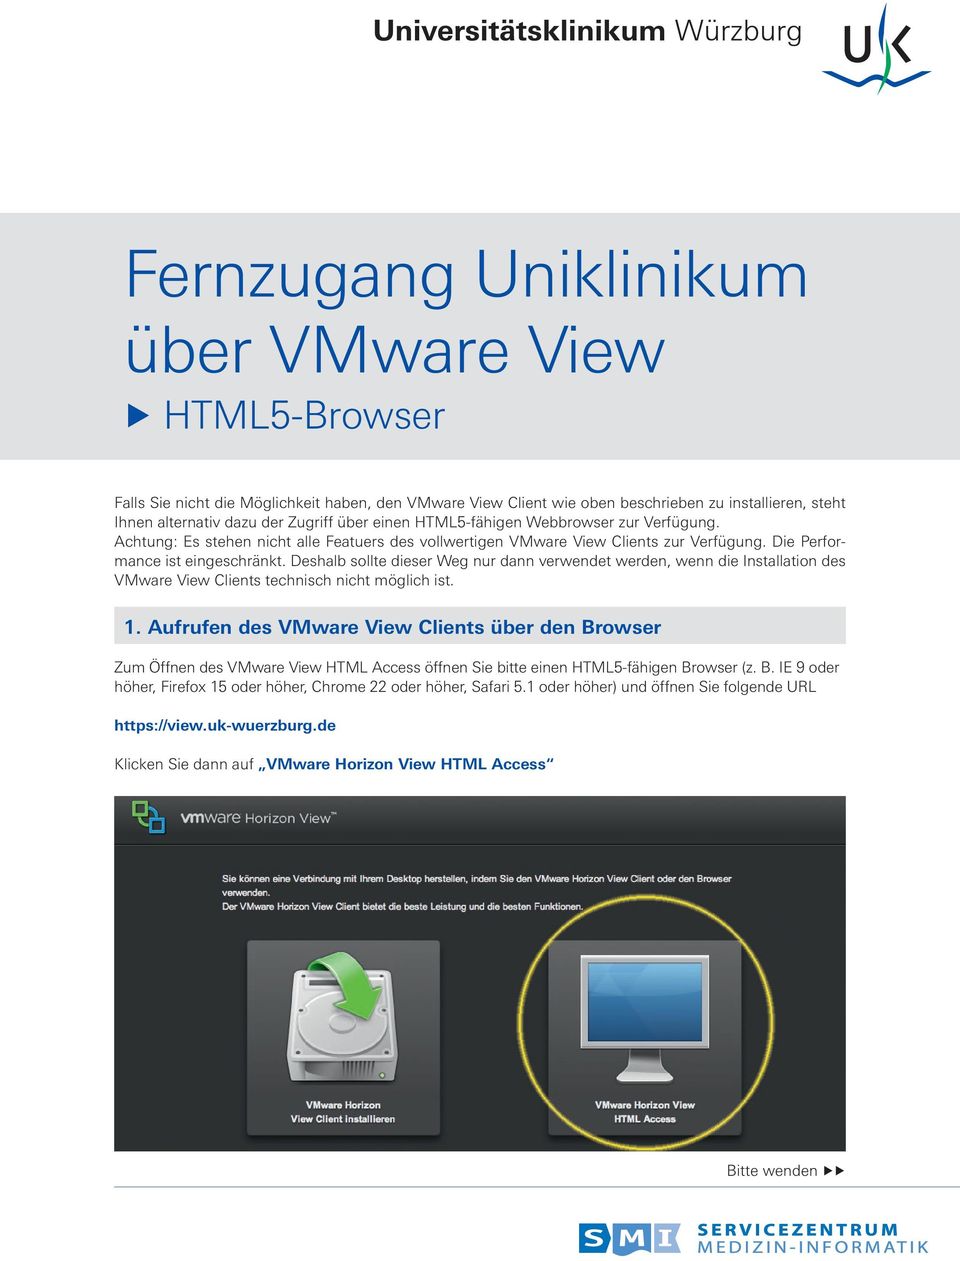 Deshalb sollte dieser Weg nur dann verwendet werden, wenn die Installation des VMware View Clients technisch nicht möglich ist. 1.